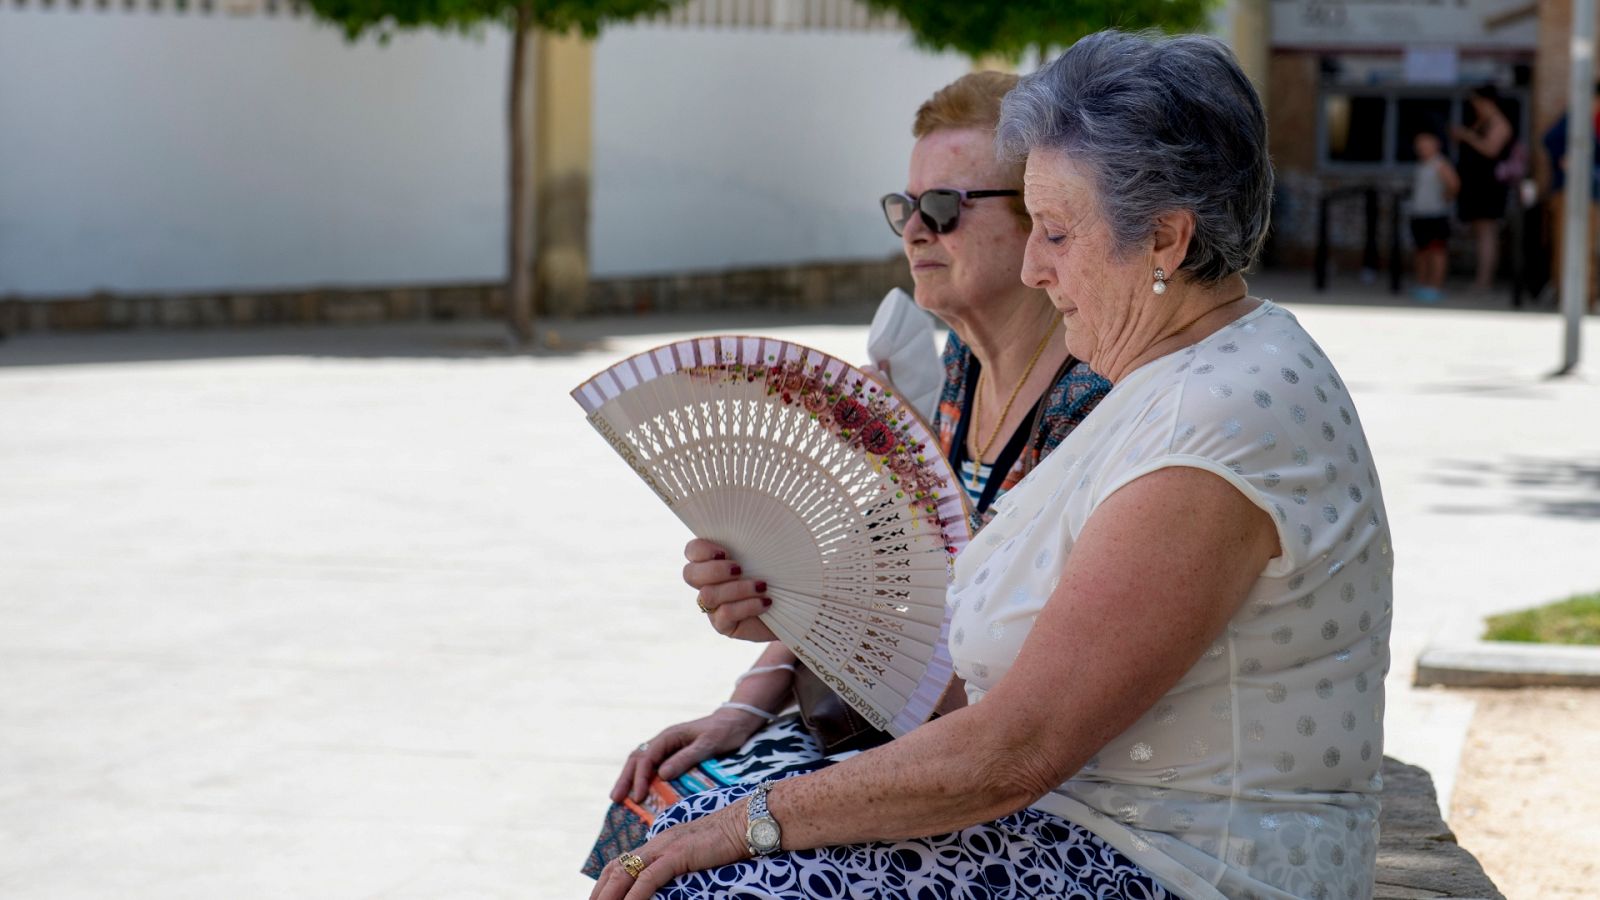 España vive la ola de calor más intensa en 20 años para un mes de junio